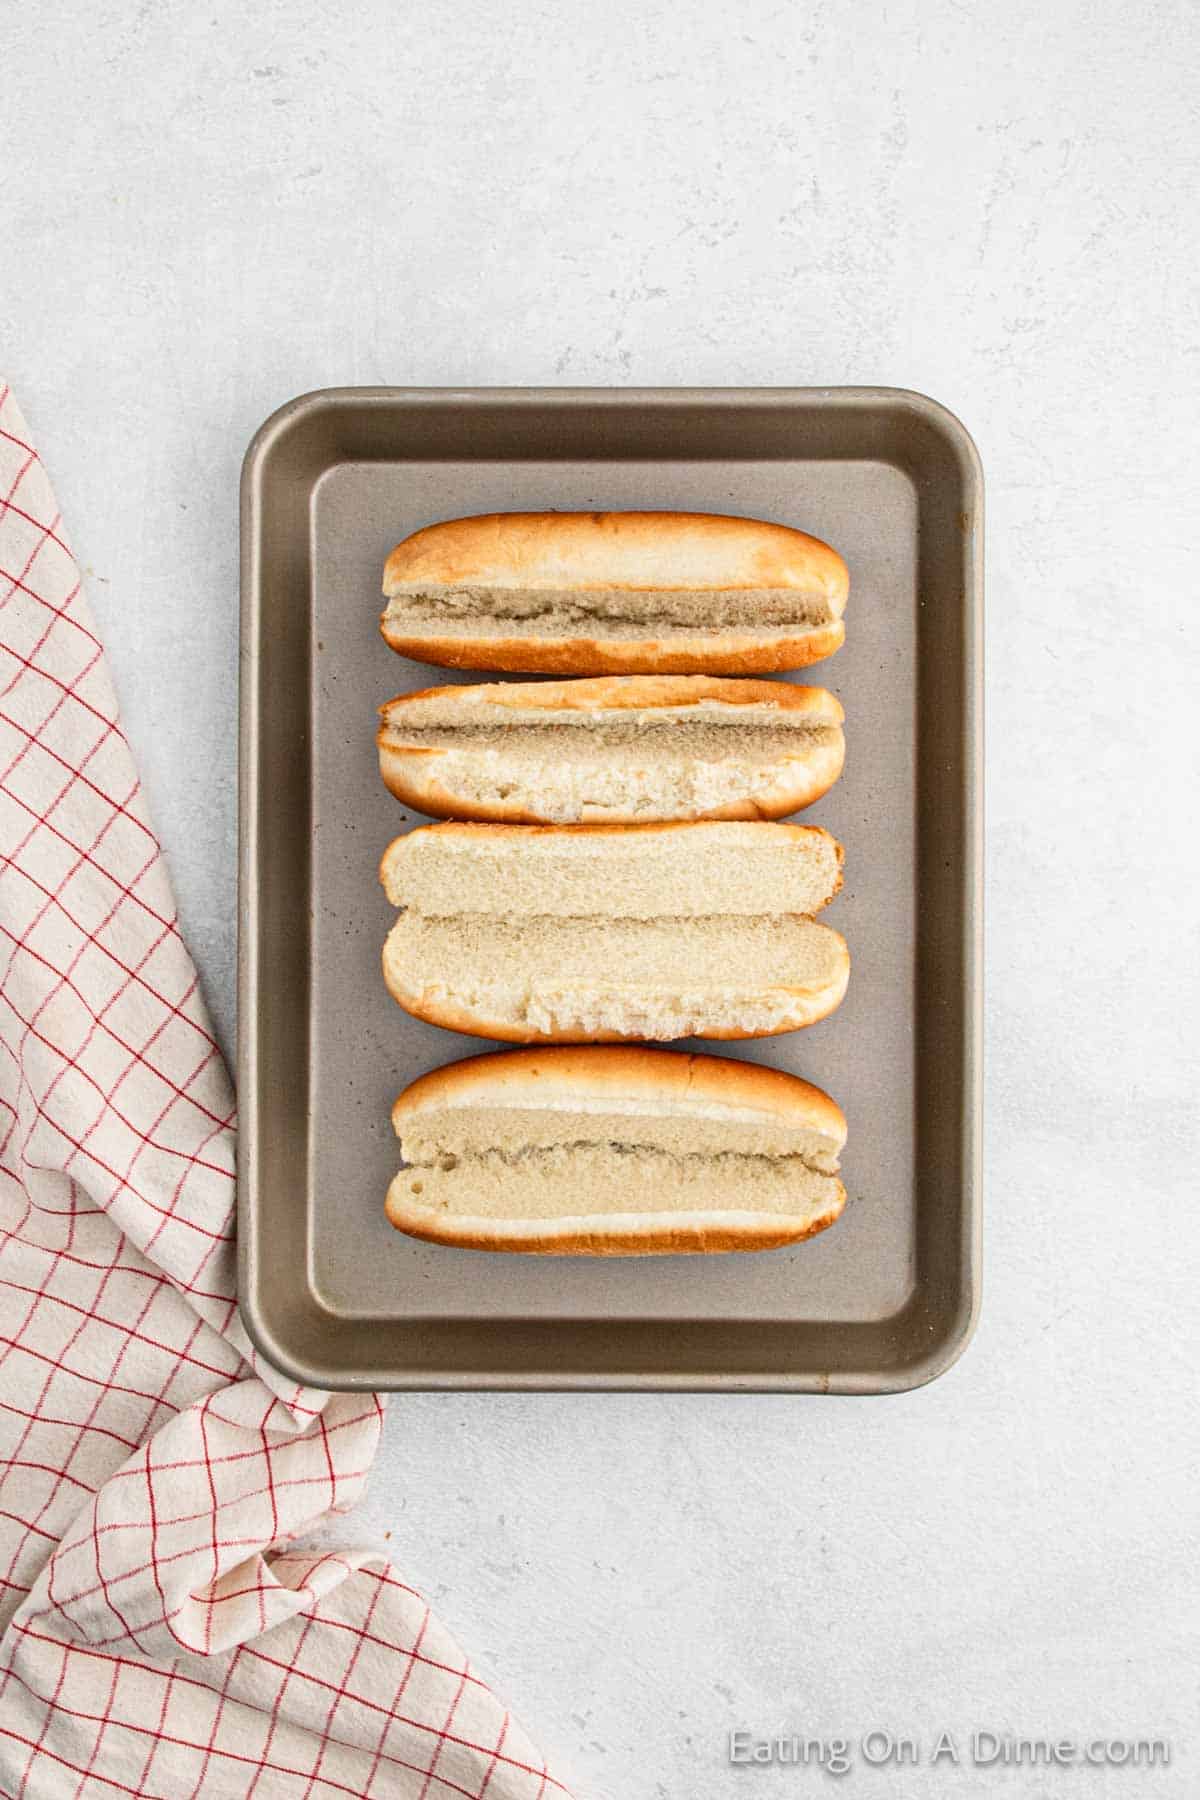 Hot dog buns on a baking sheet